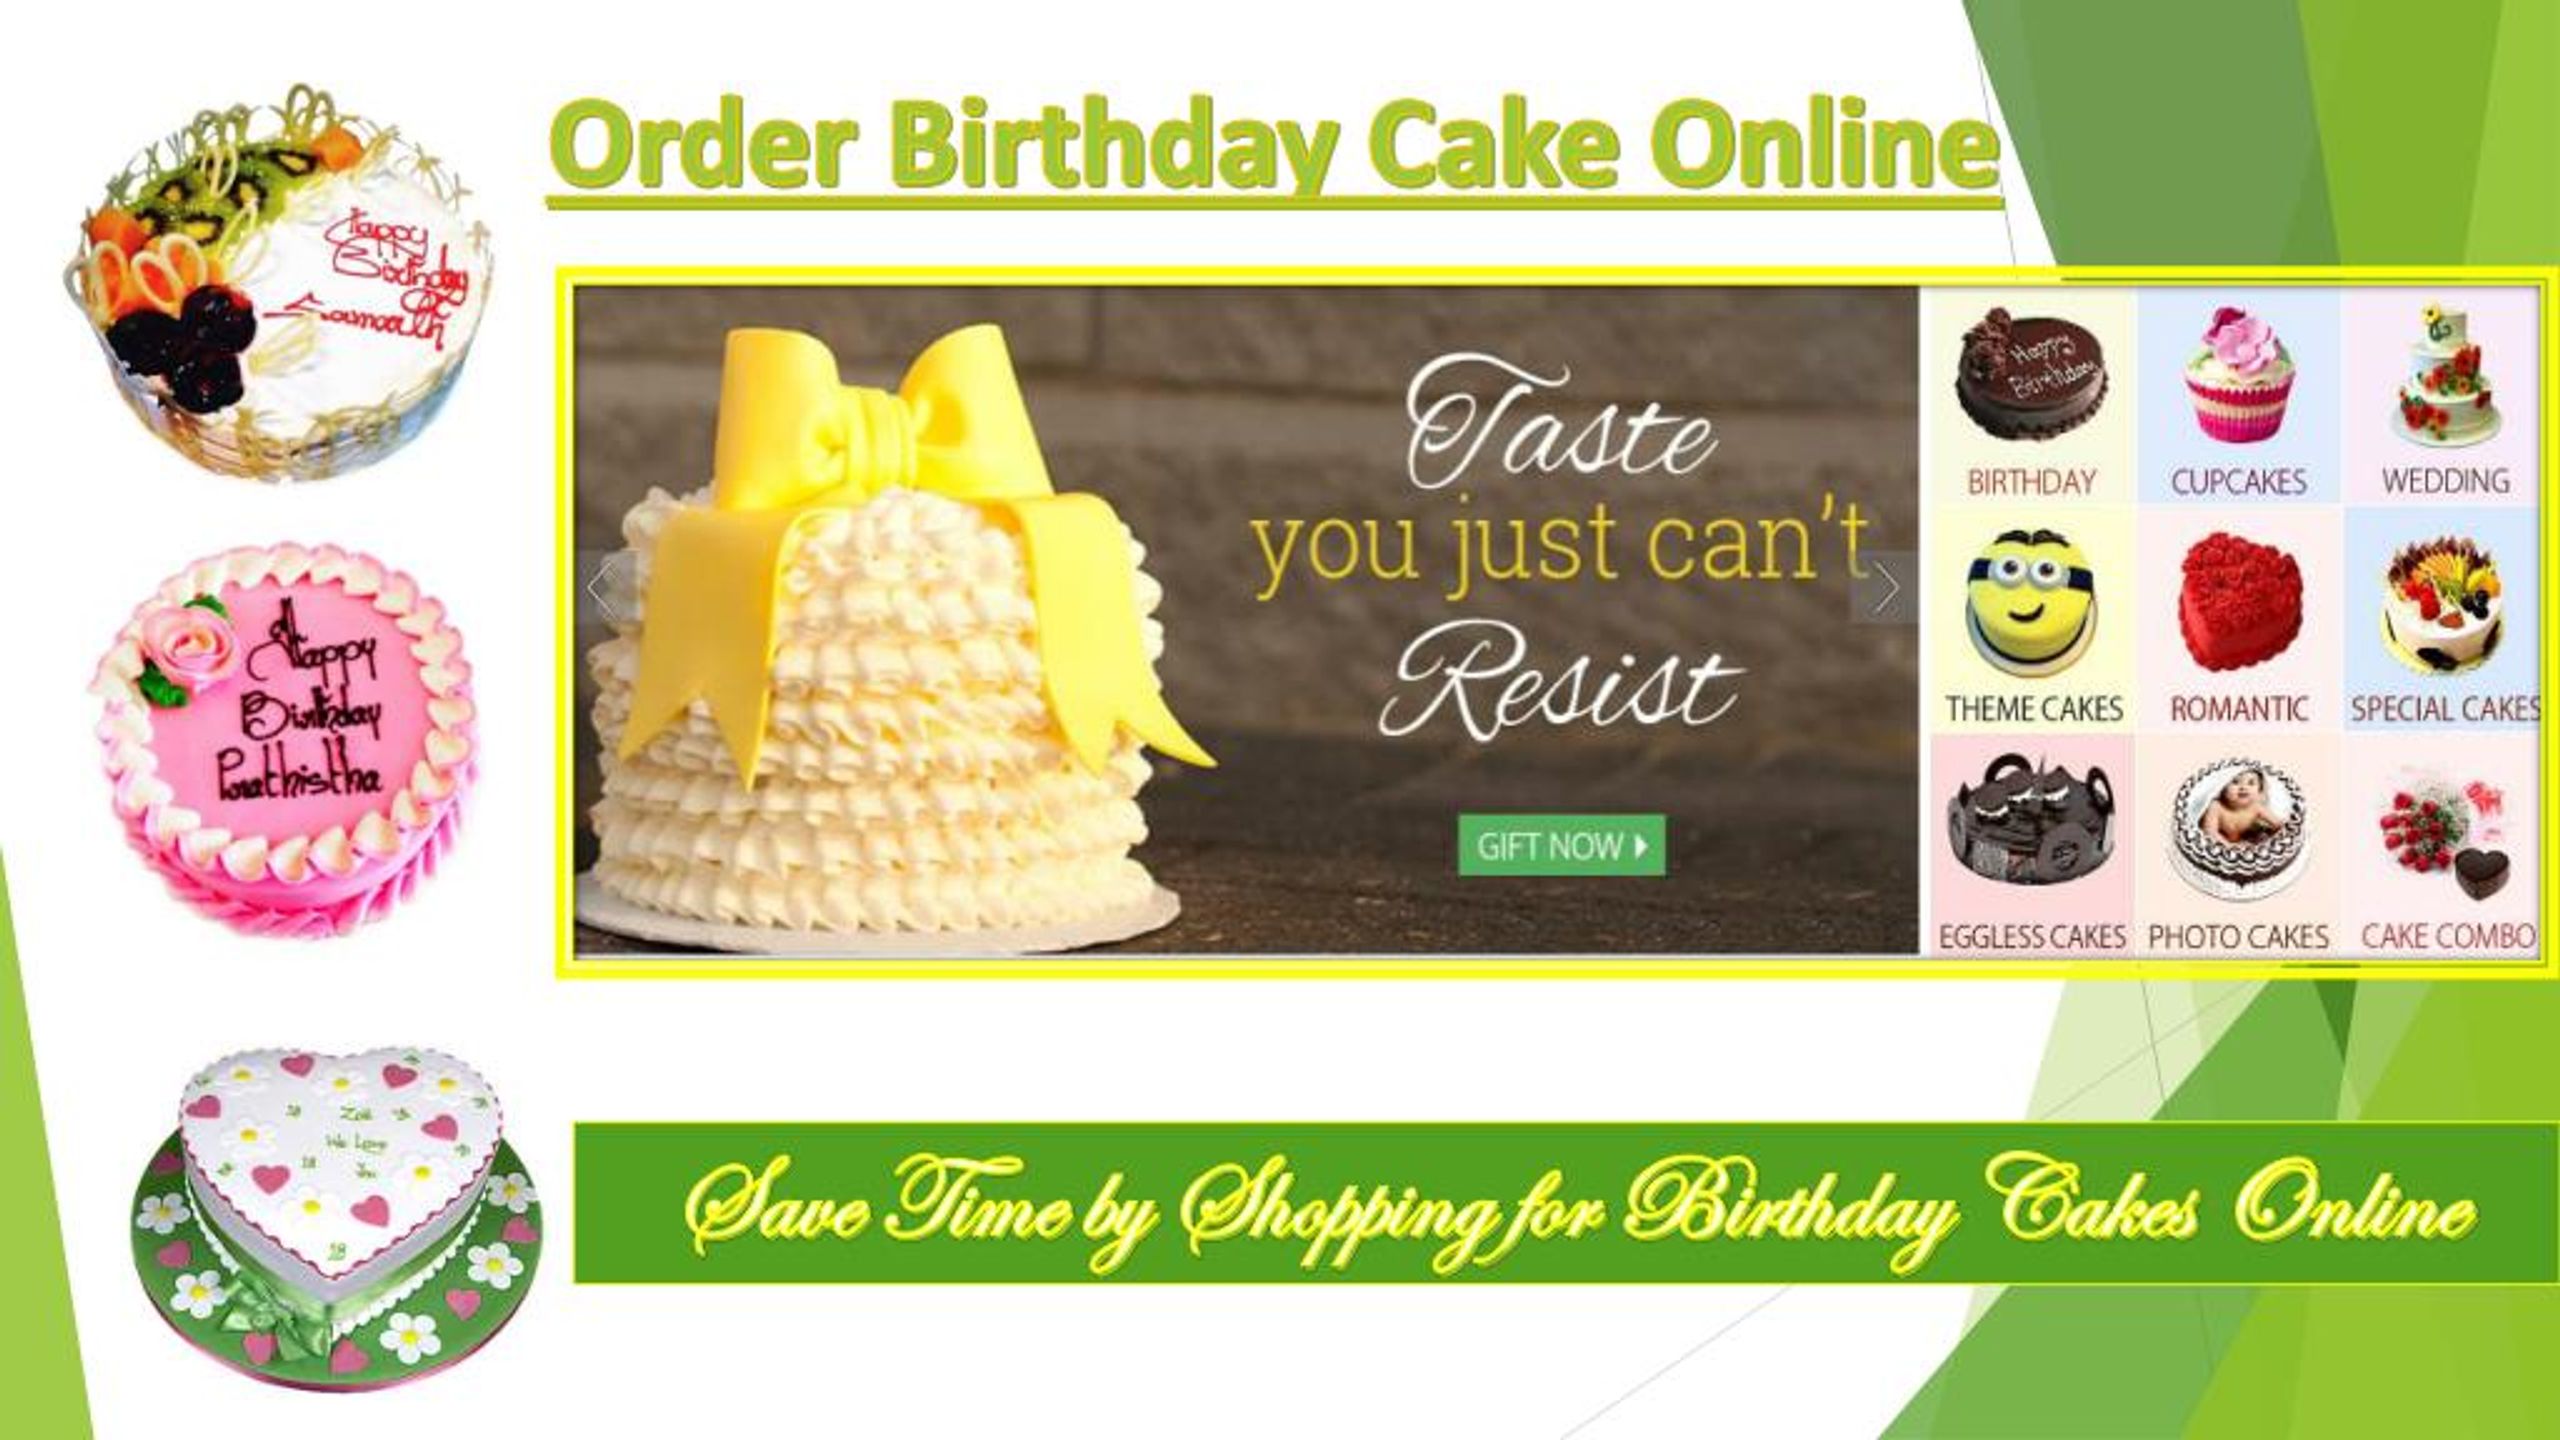 100+ HD Happy Birthday Lovish Cake Images And Shayari